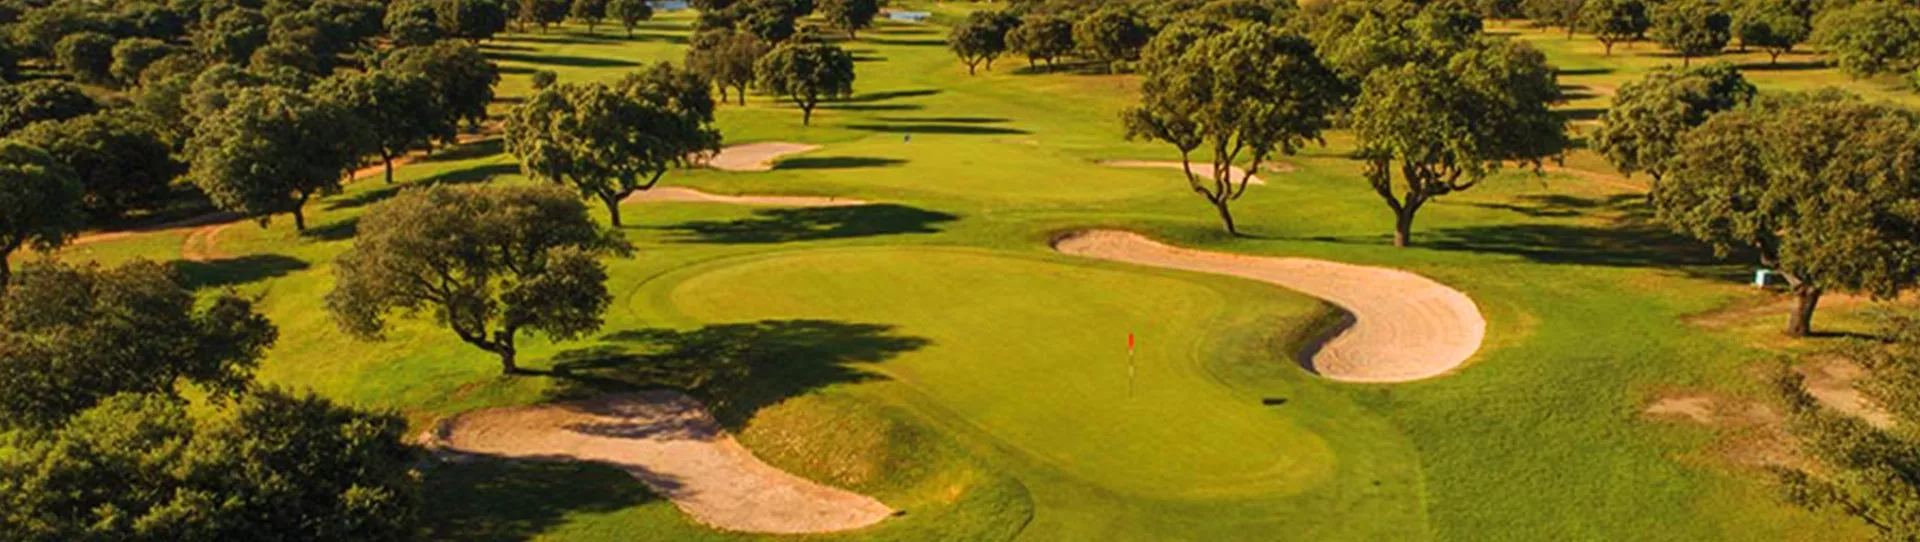 Spain golf courses - Villamayor Golf Course - Photo 2